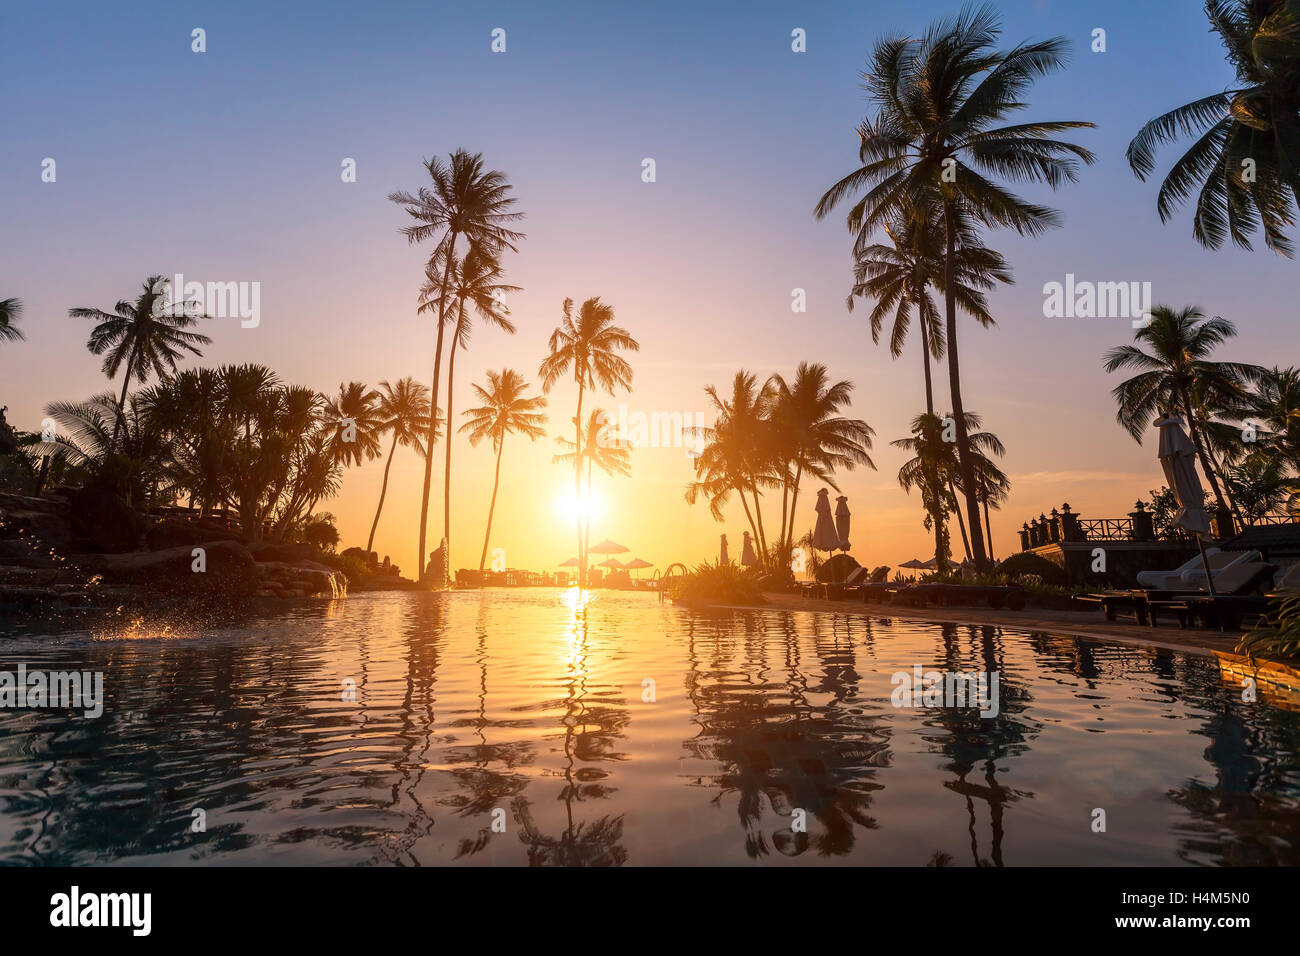 Hôtel de luxe plage, silhouette de palmiers, une piscine, un beau coucher de soleil Banque D'Images